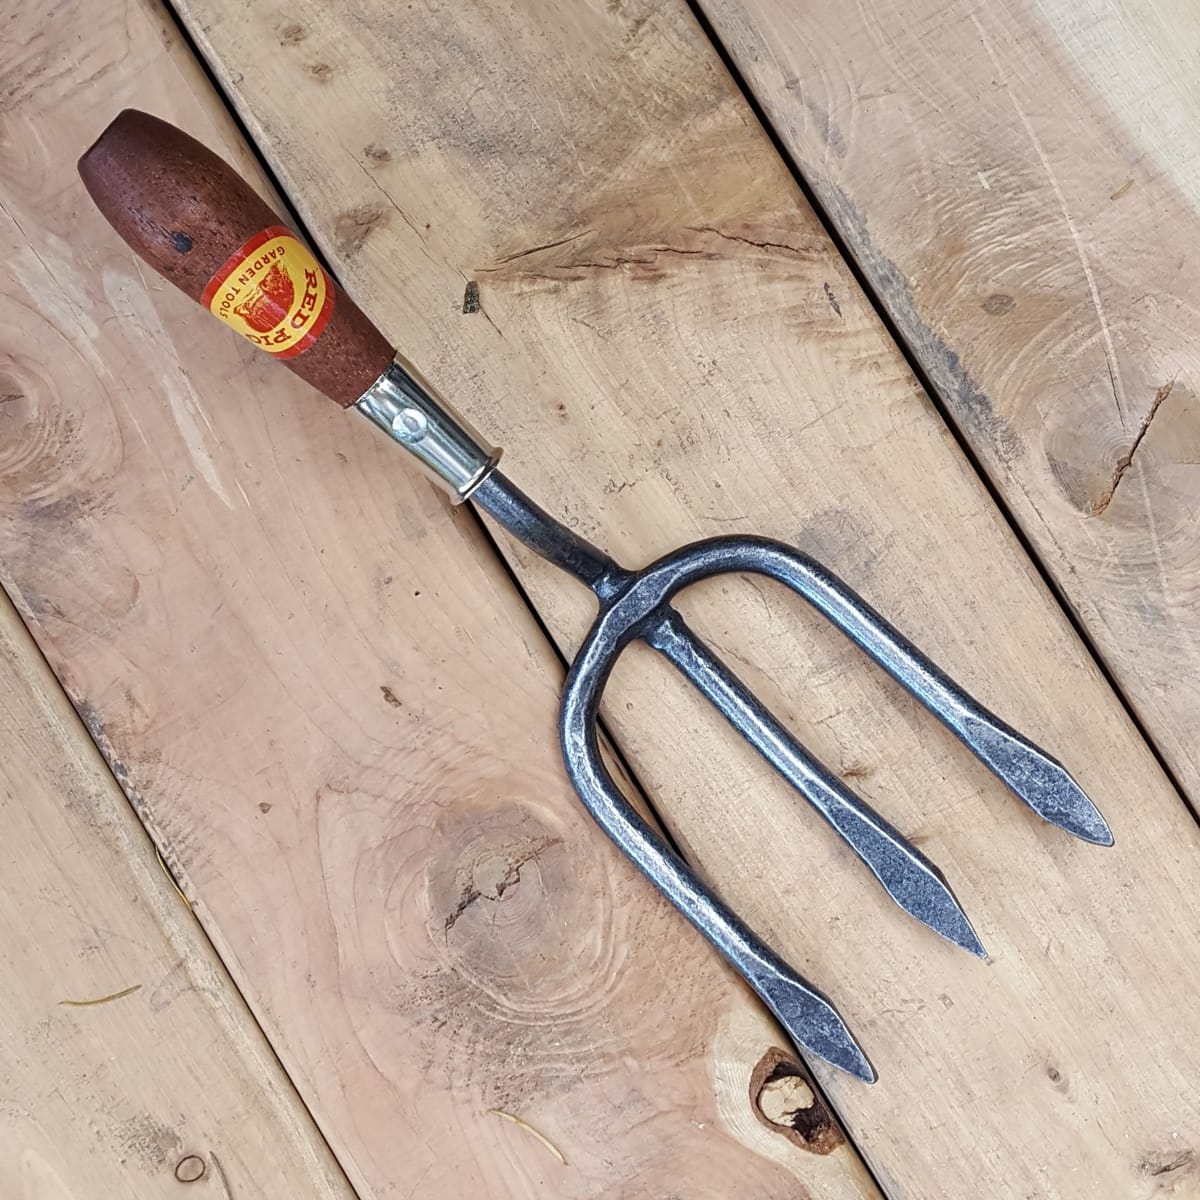 garden fork tool